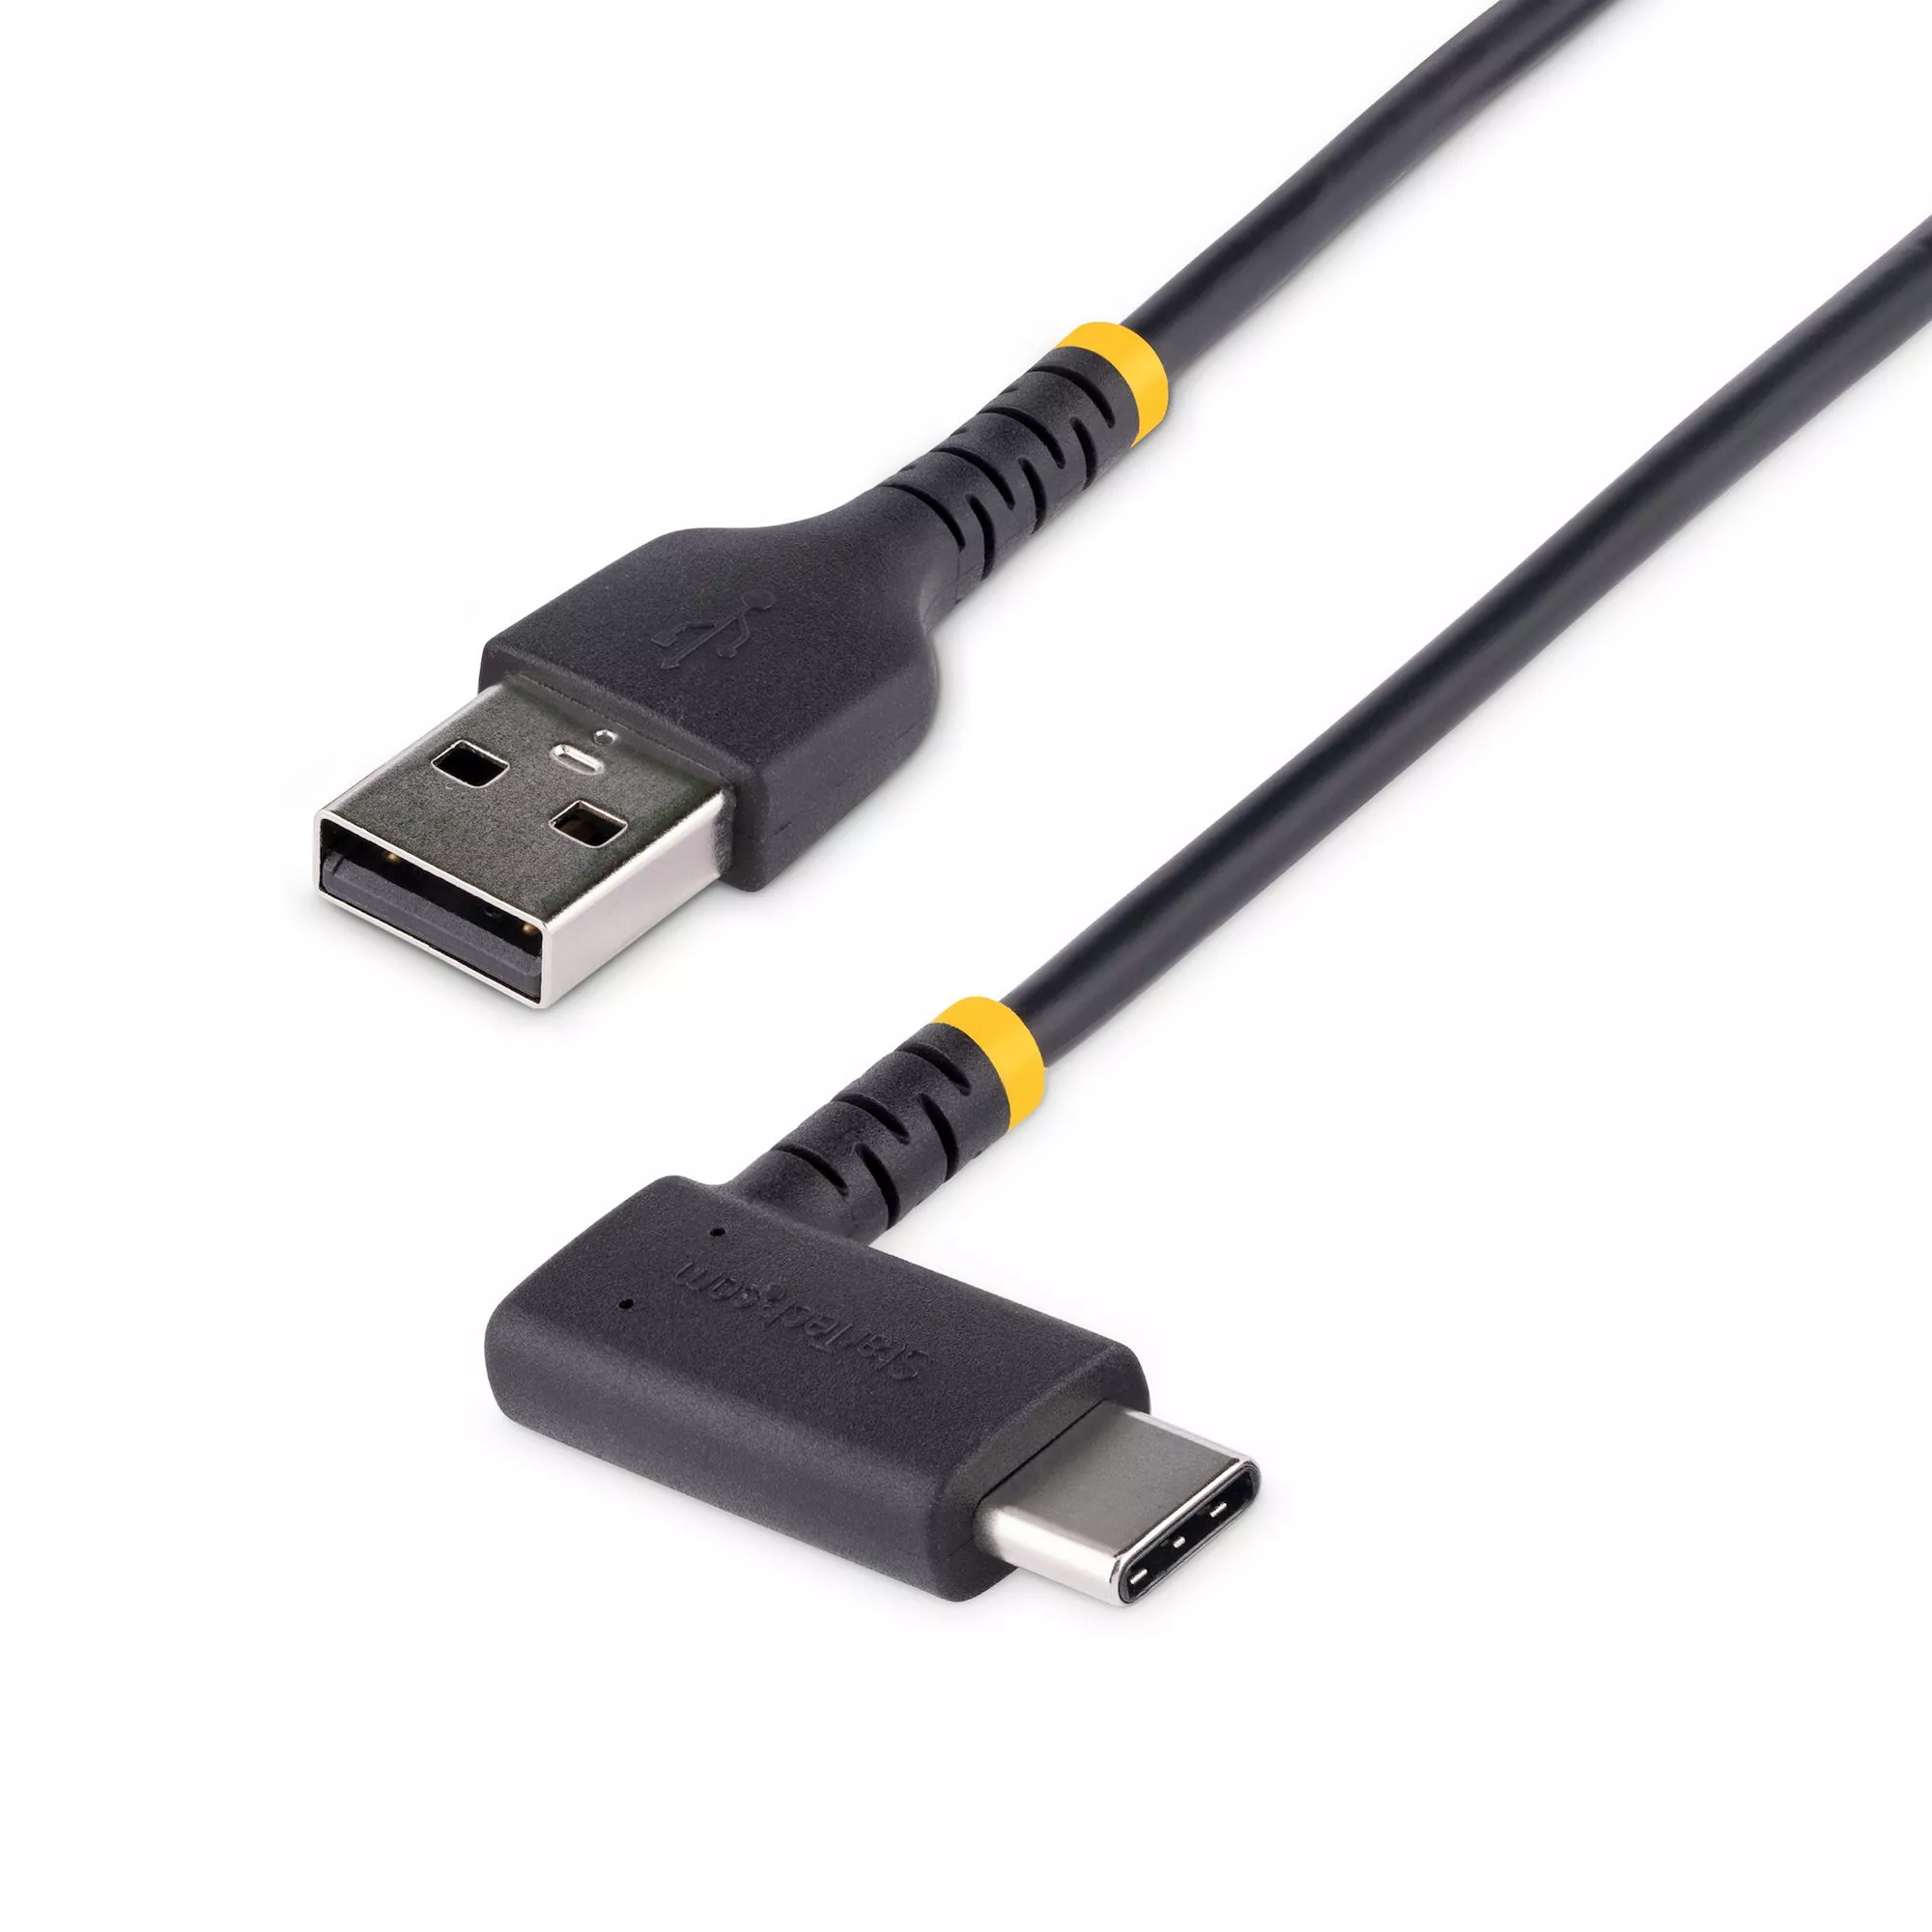 Achat StarTech.com Câble USB A vers USB C de 30cm - Câble de au meilleur prix